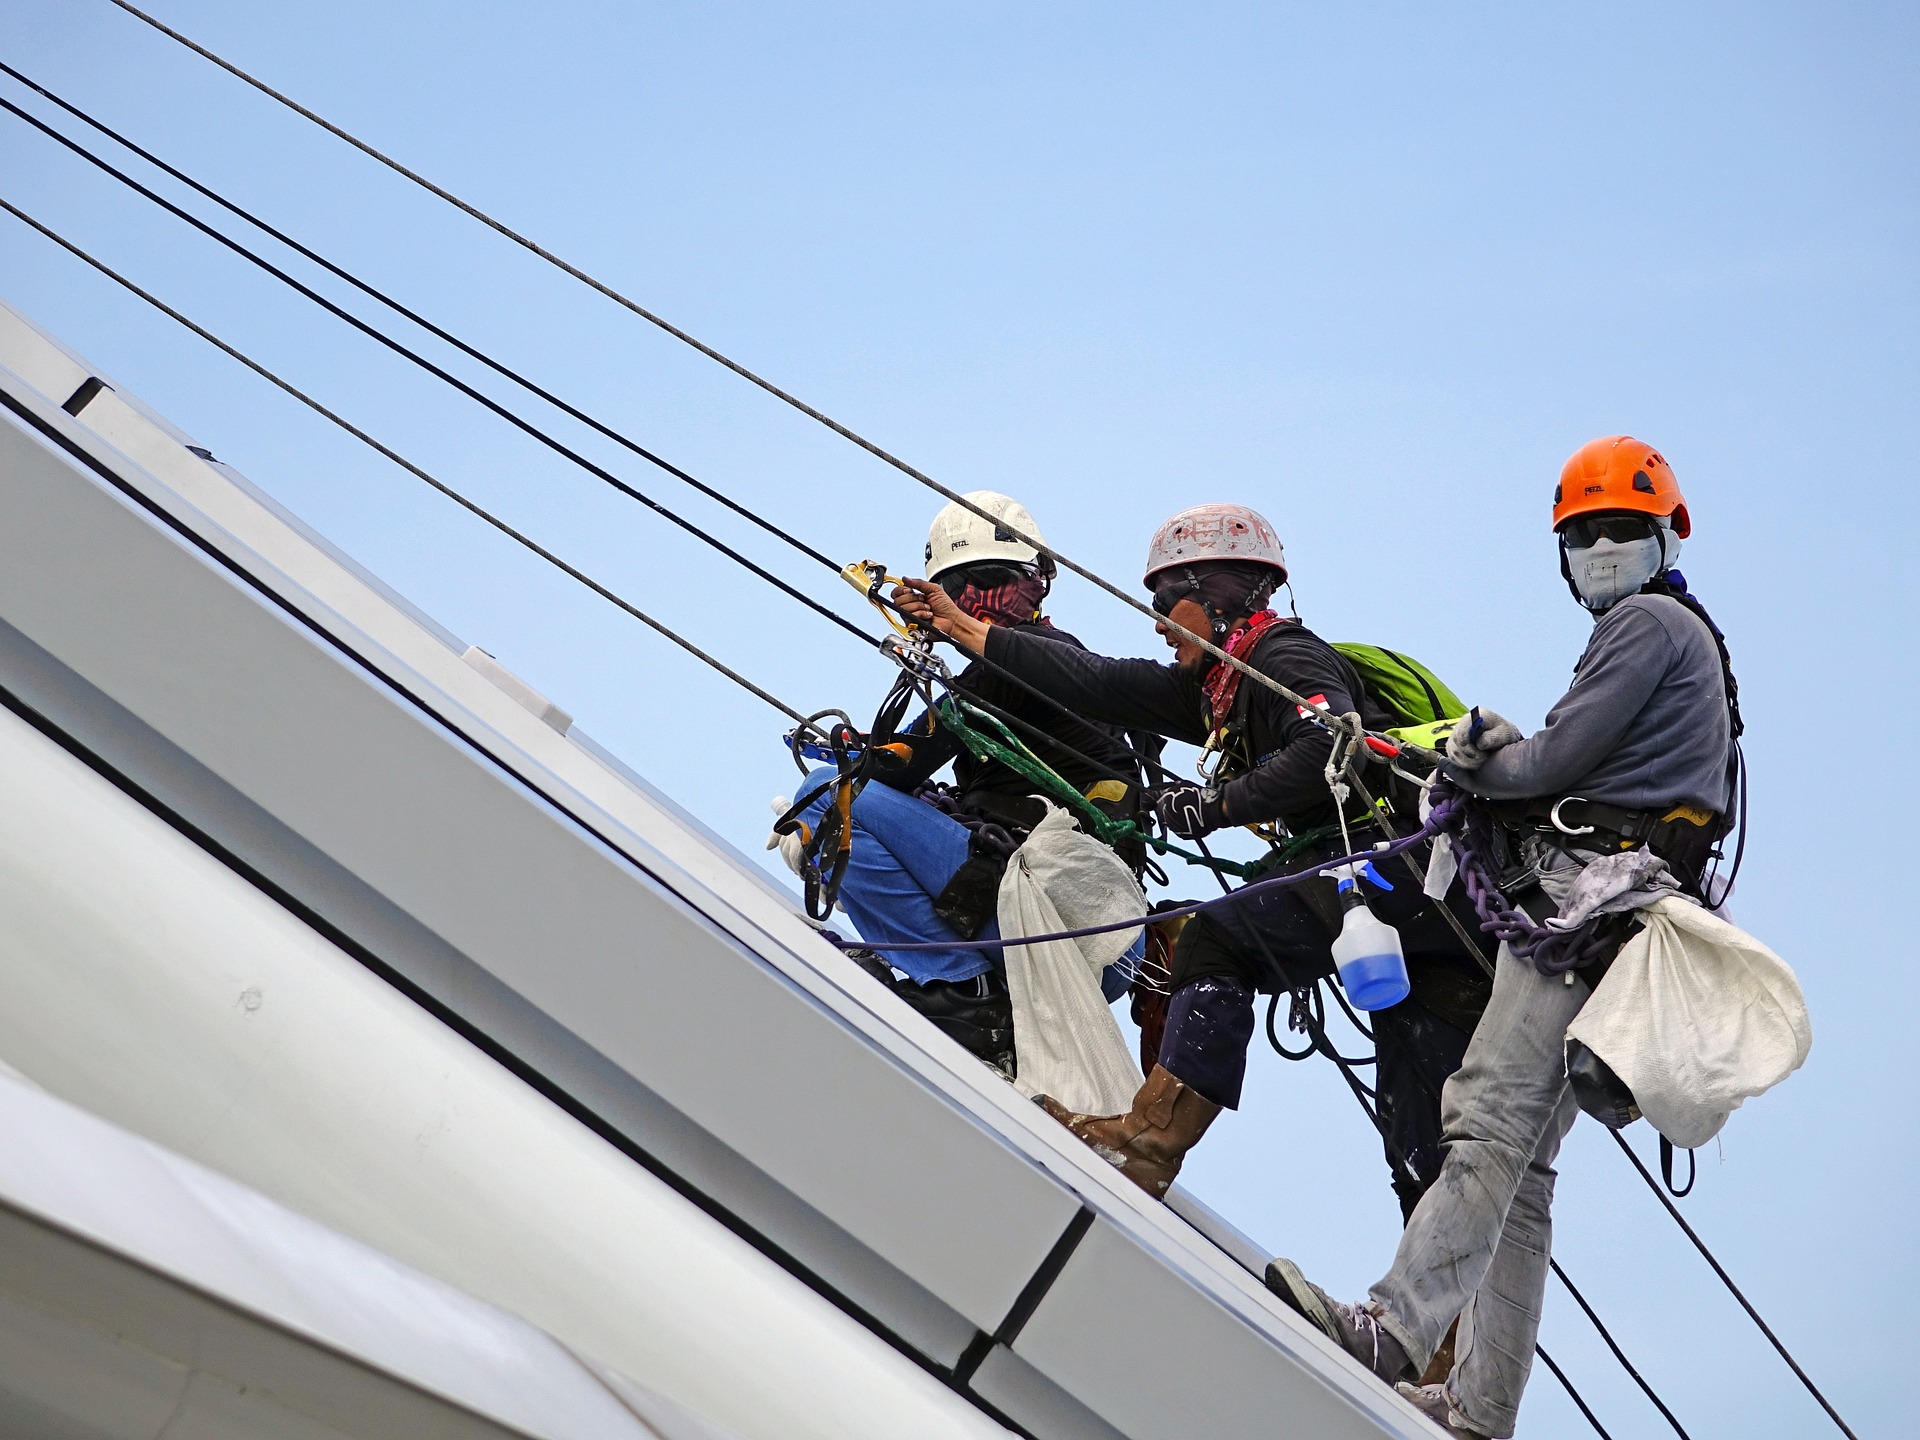 três trabalhadores estão escalando uma construção, segurando em cabos de aço. Eles usam capacetes e botas. Um deles olha em direção à câmera.